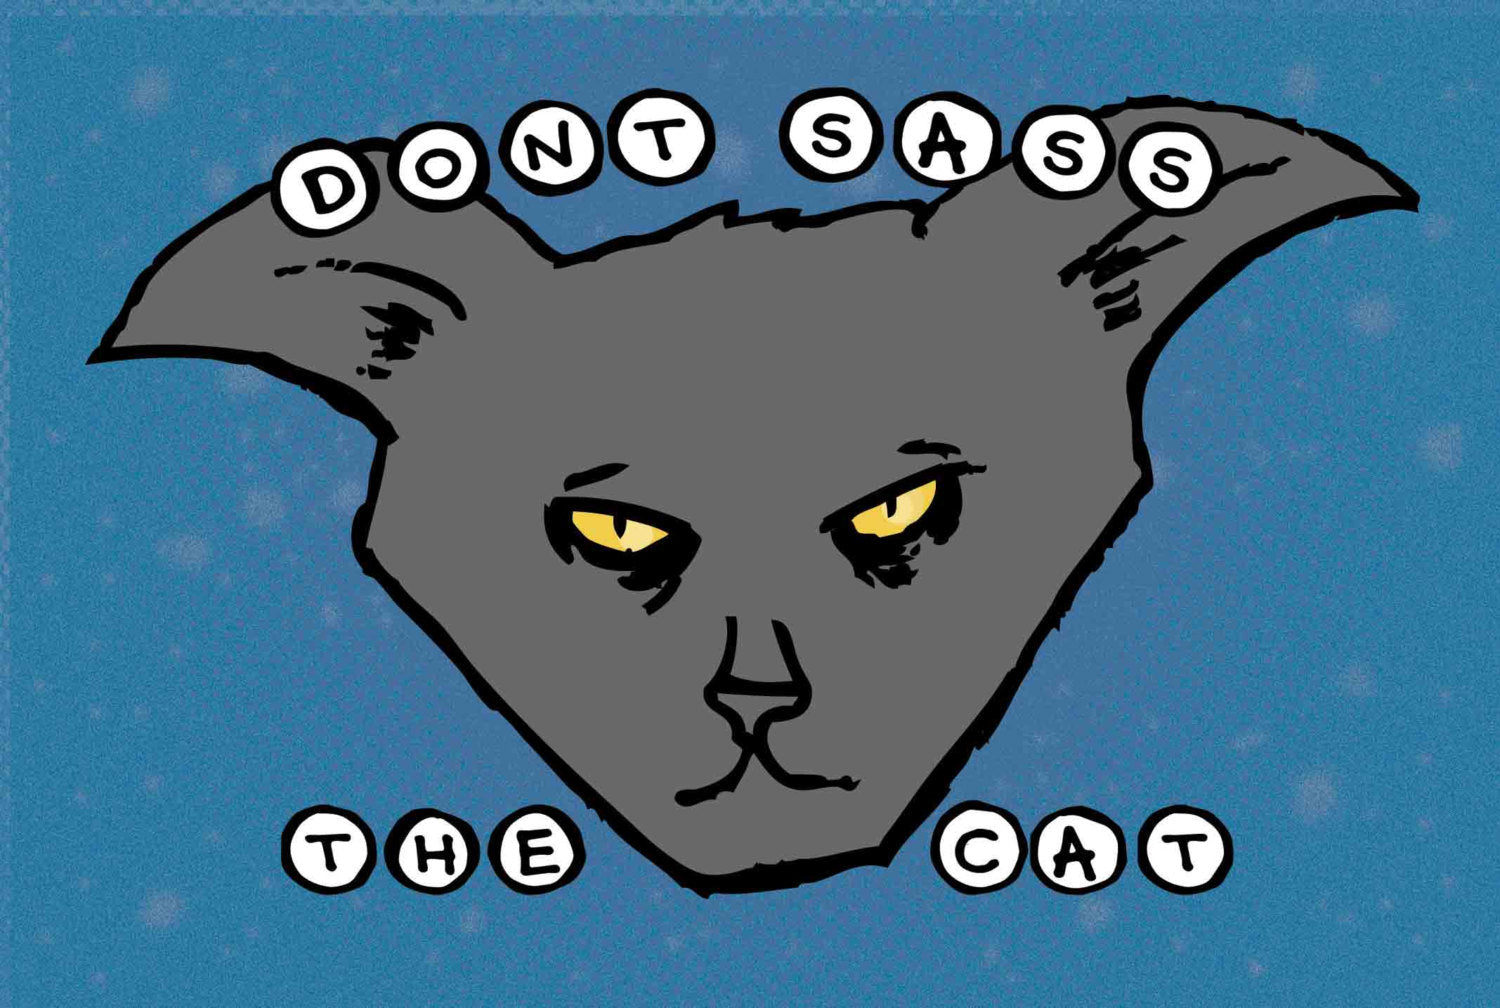 Postcard: Don't Sass the Cat - Ten Pack